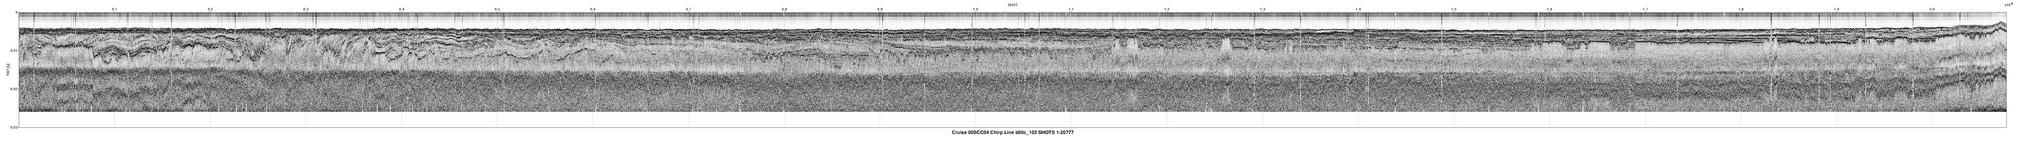 00SCC04 b00c_103 seismic profile image